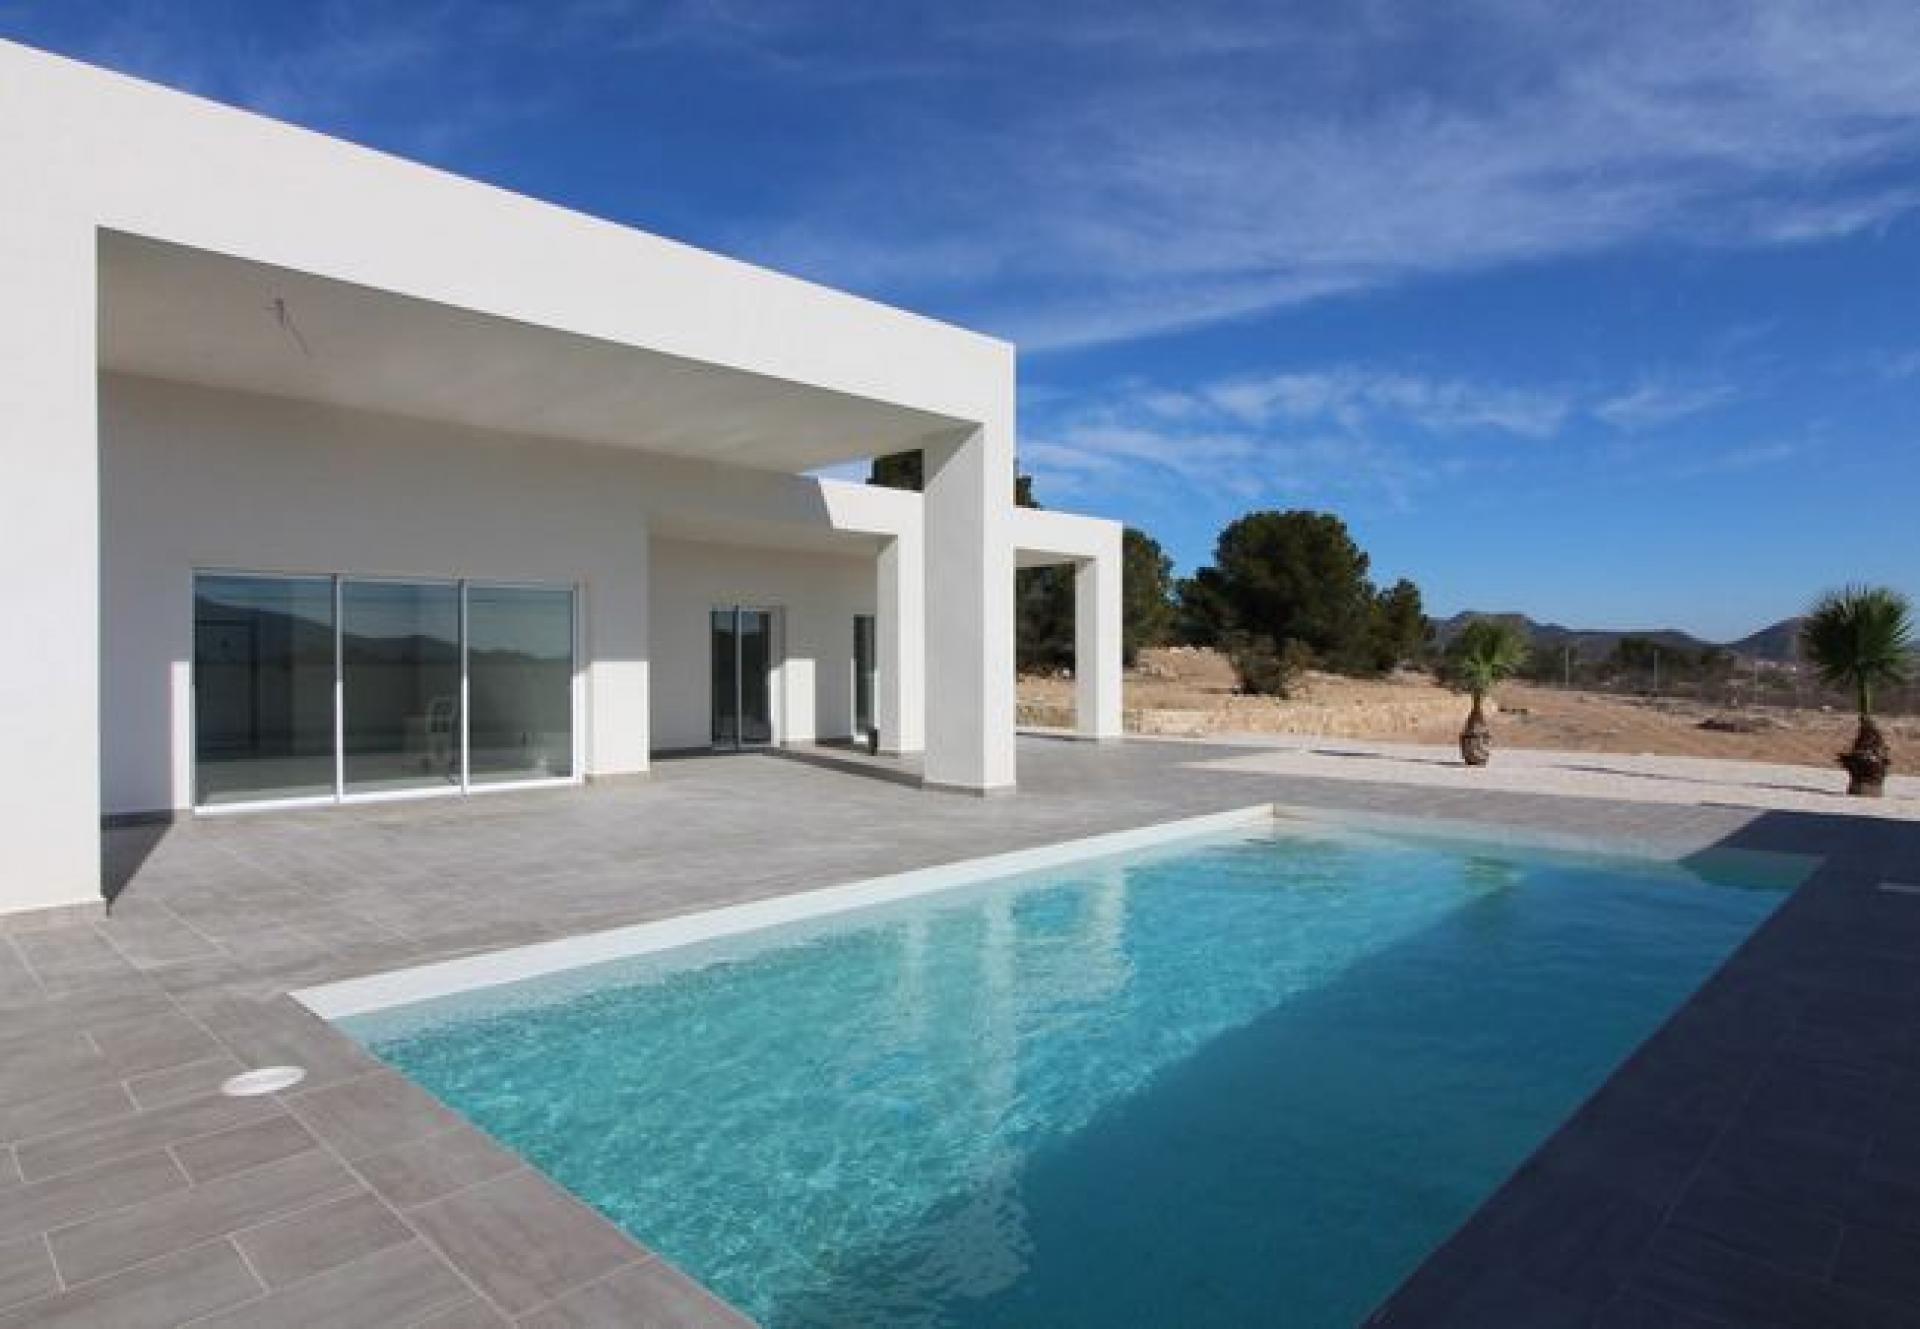 Huis - Villa te bouwen Costa Blanca - Spanje in Medvilla Spanje